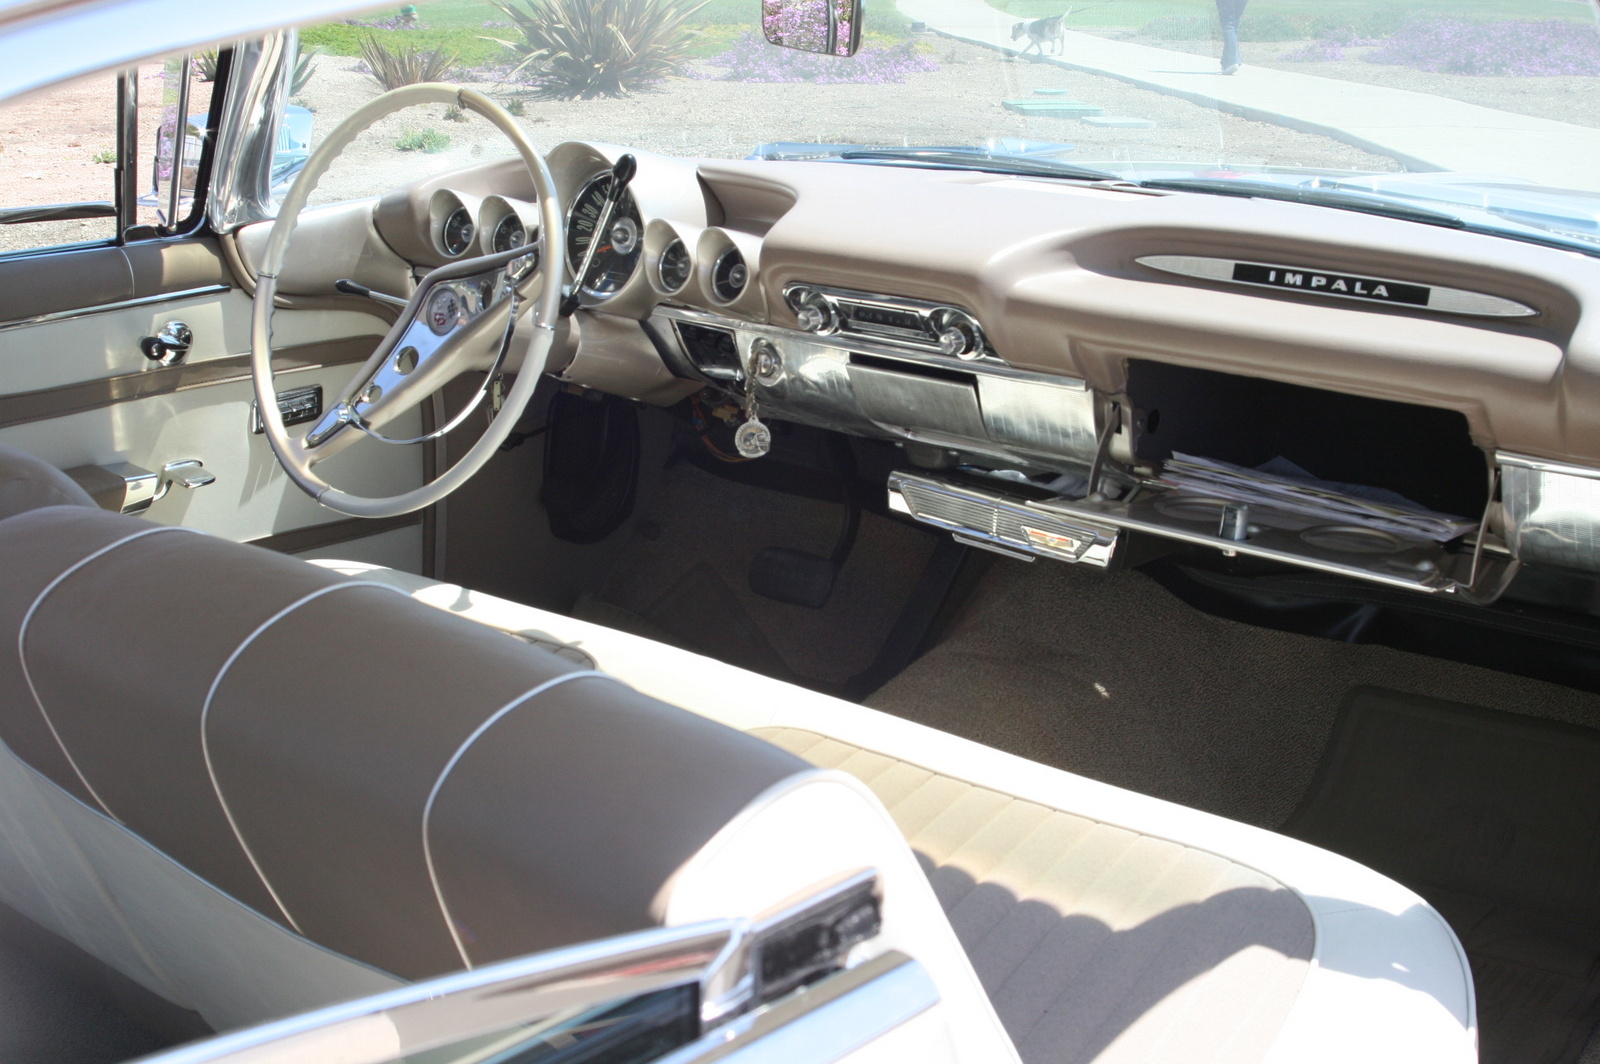 1959 Chevrolet Impala - Pictures - CarGurus